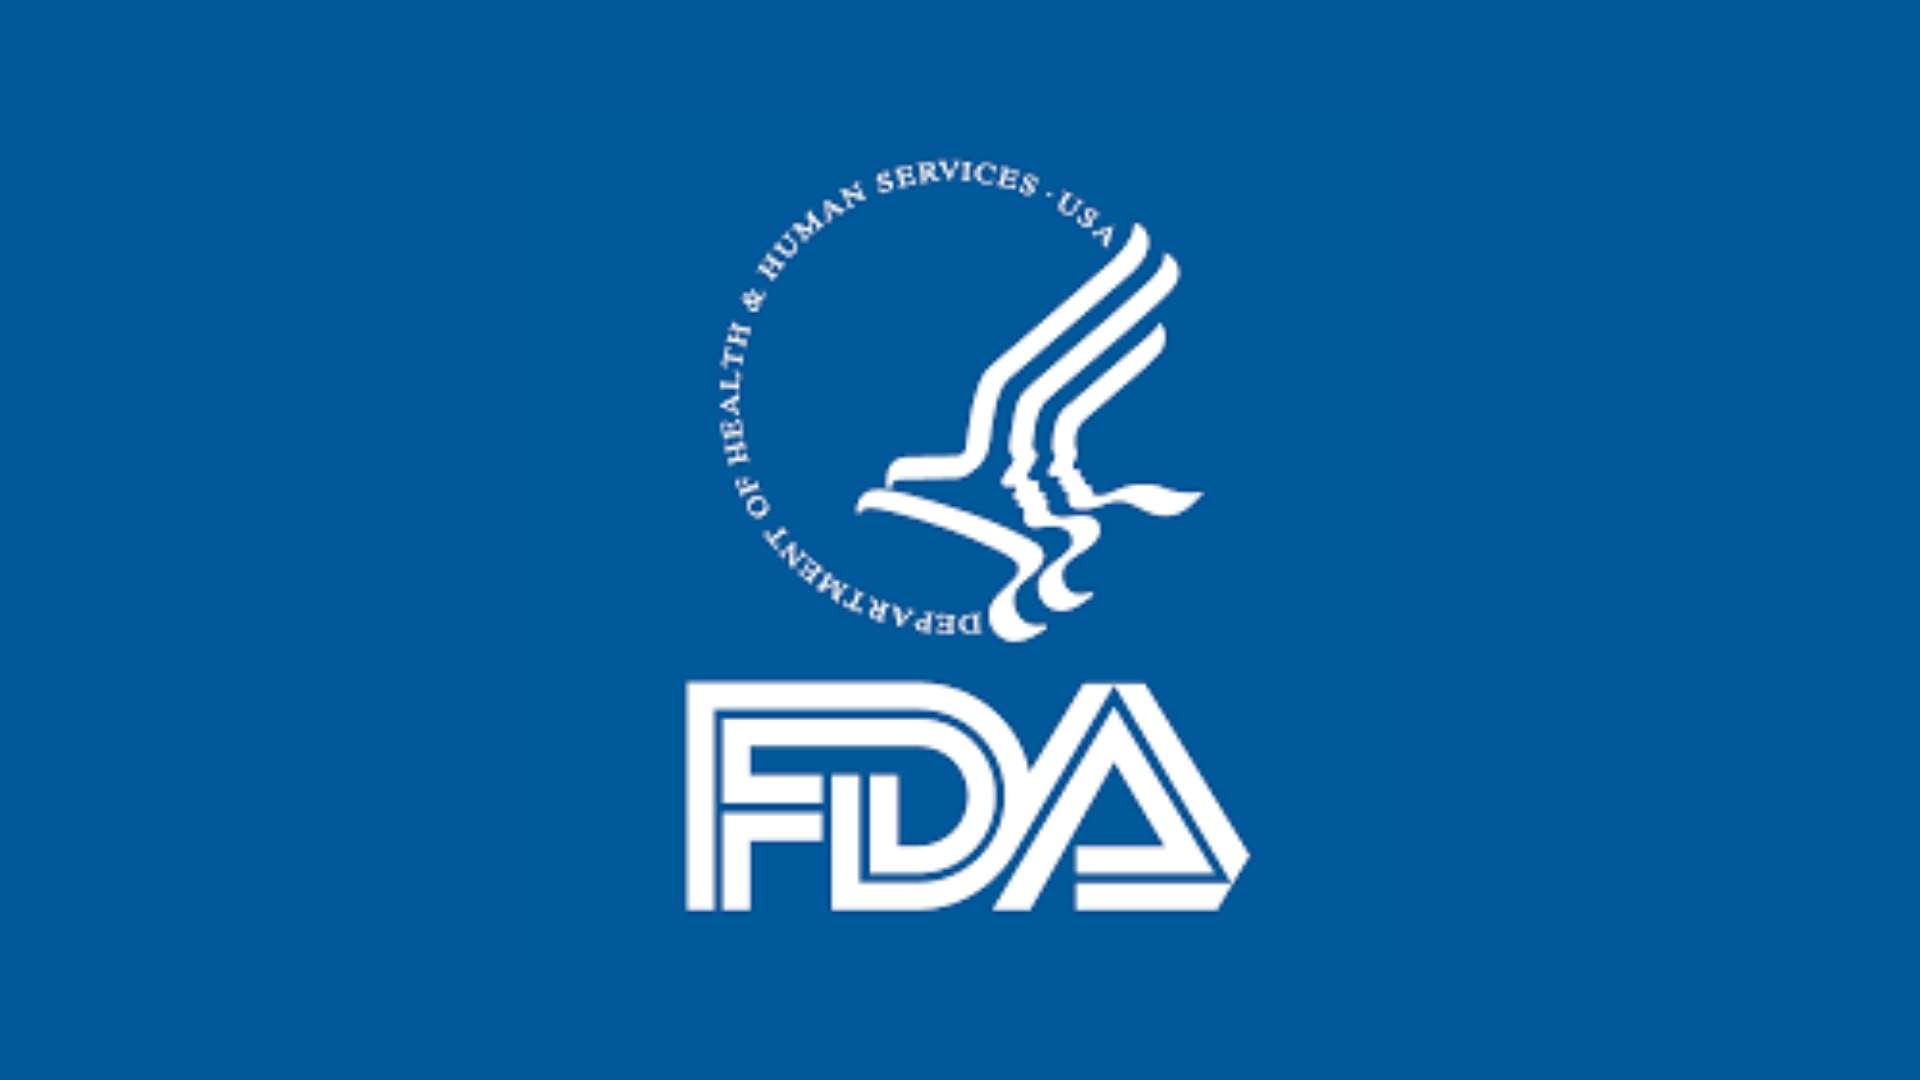 Orientação revisada da FDA sobre testes de COVID-19: modificações